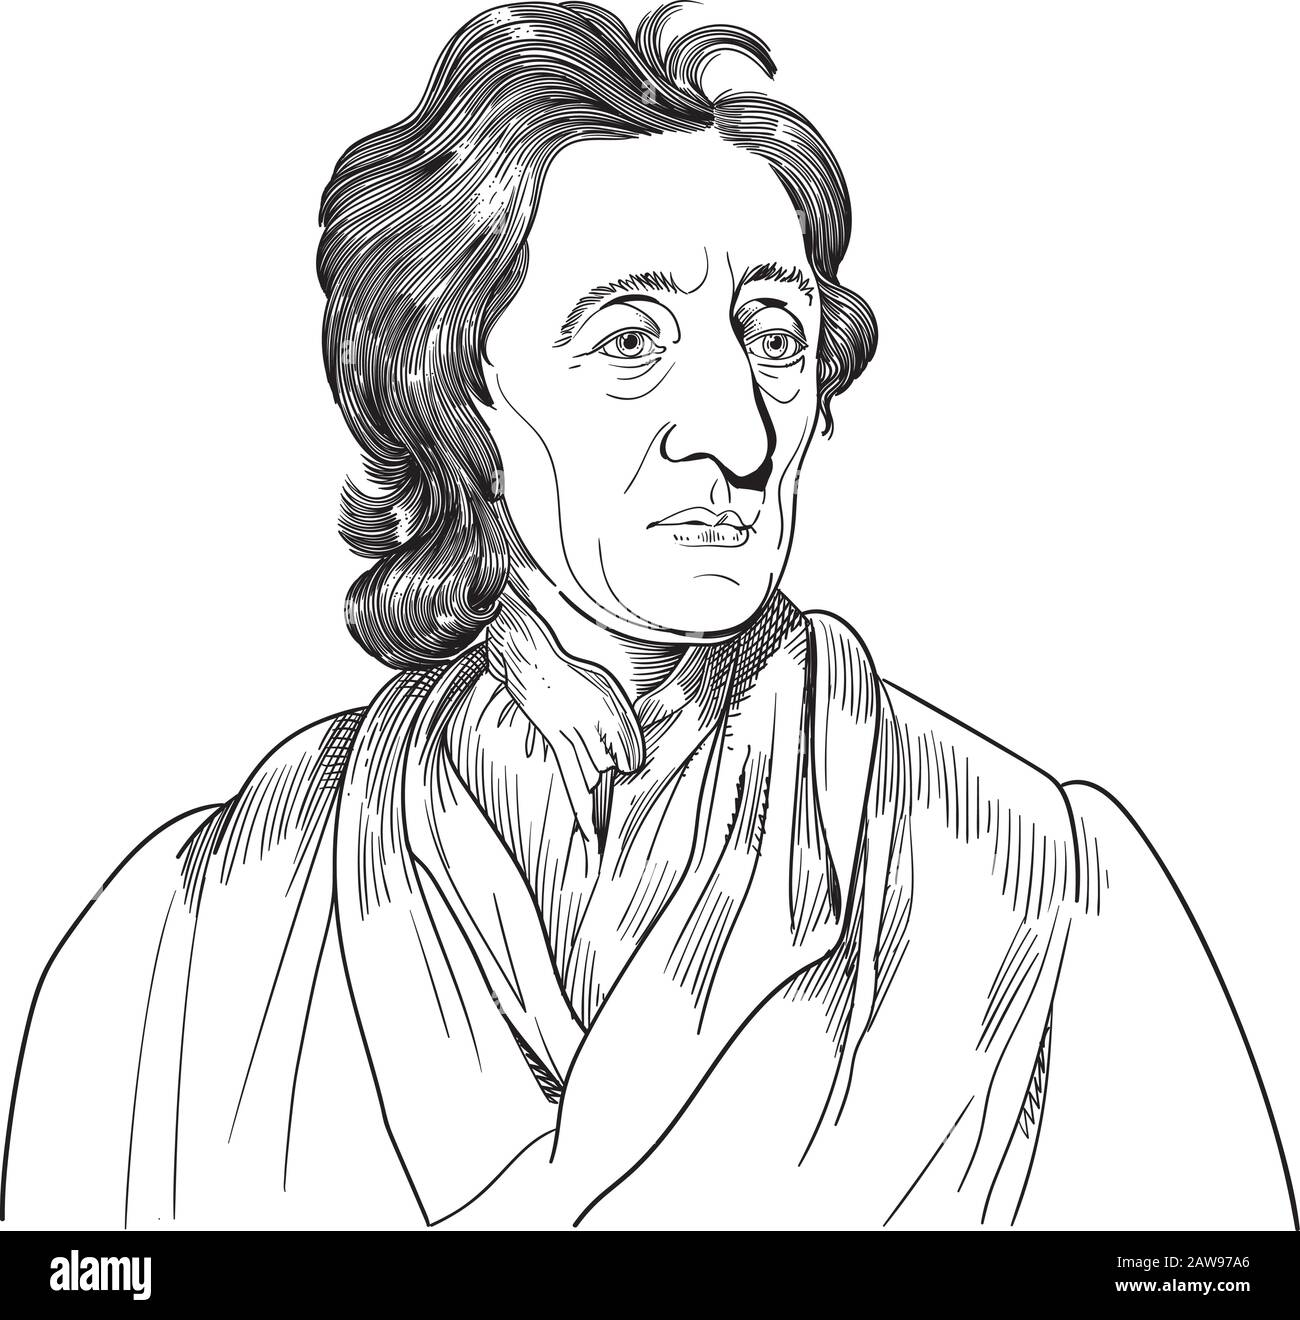 John Locke, conocido como el Padre del Liberalismo, era un filósofo y médico inglés. La orientaciónilustración, dibujo, croquis, grabado de Locke fueron u Ilustración del Vector